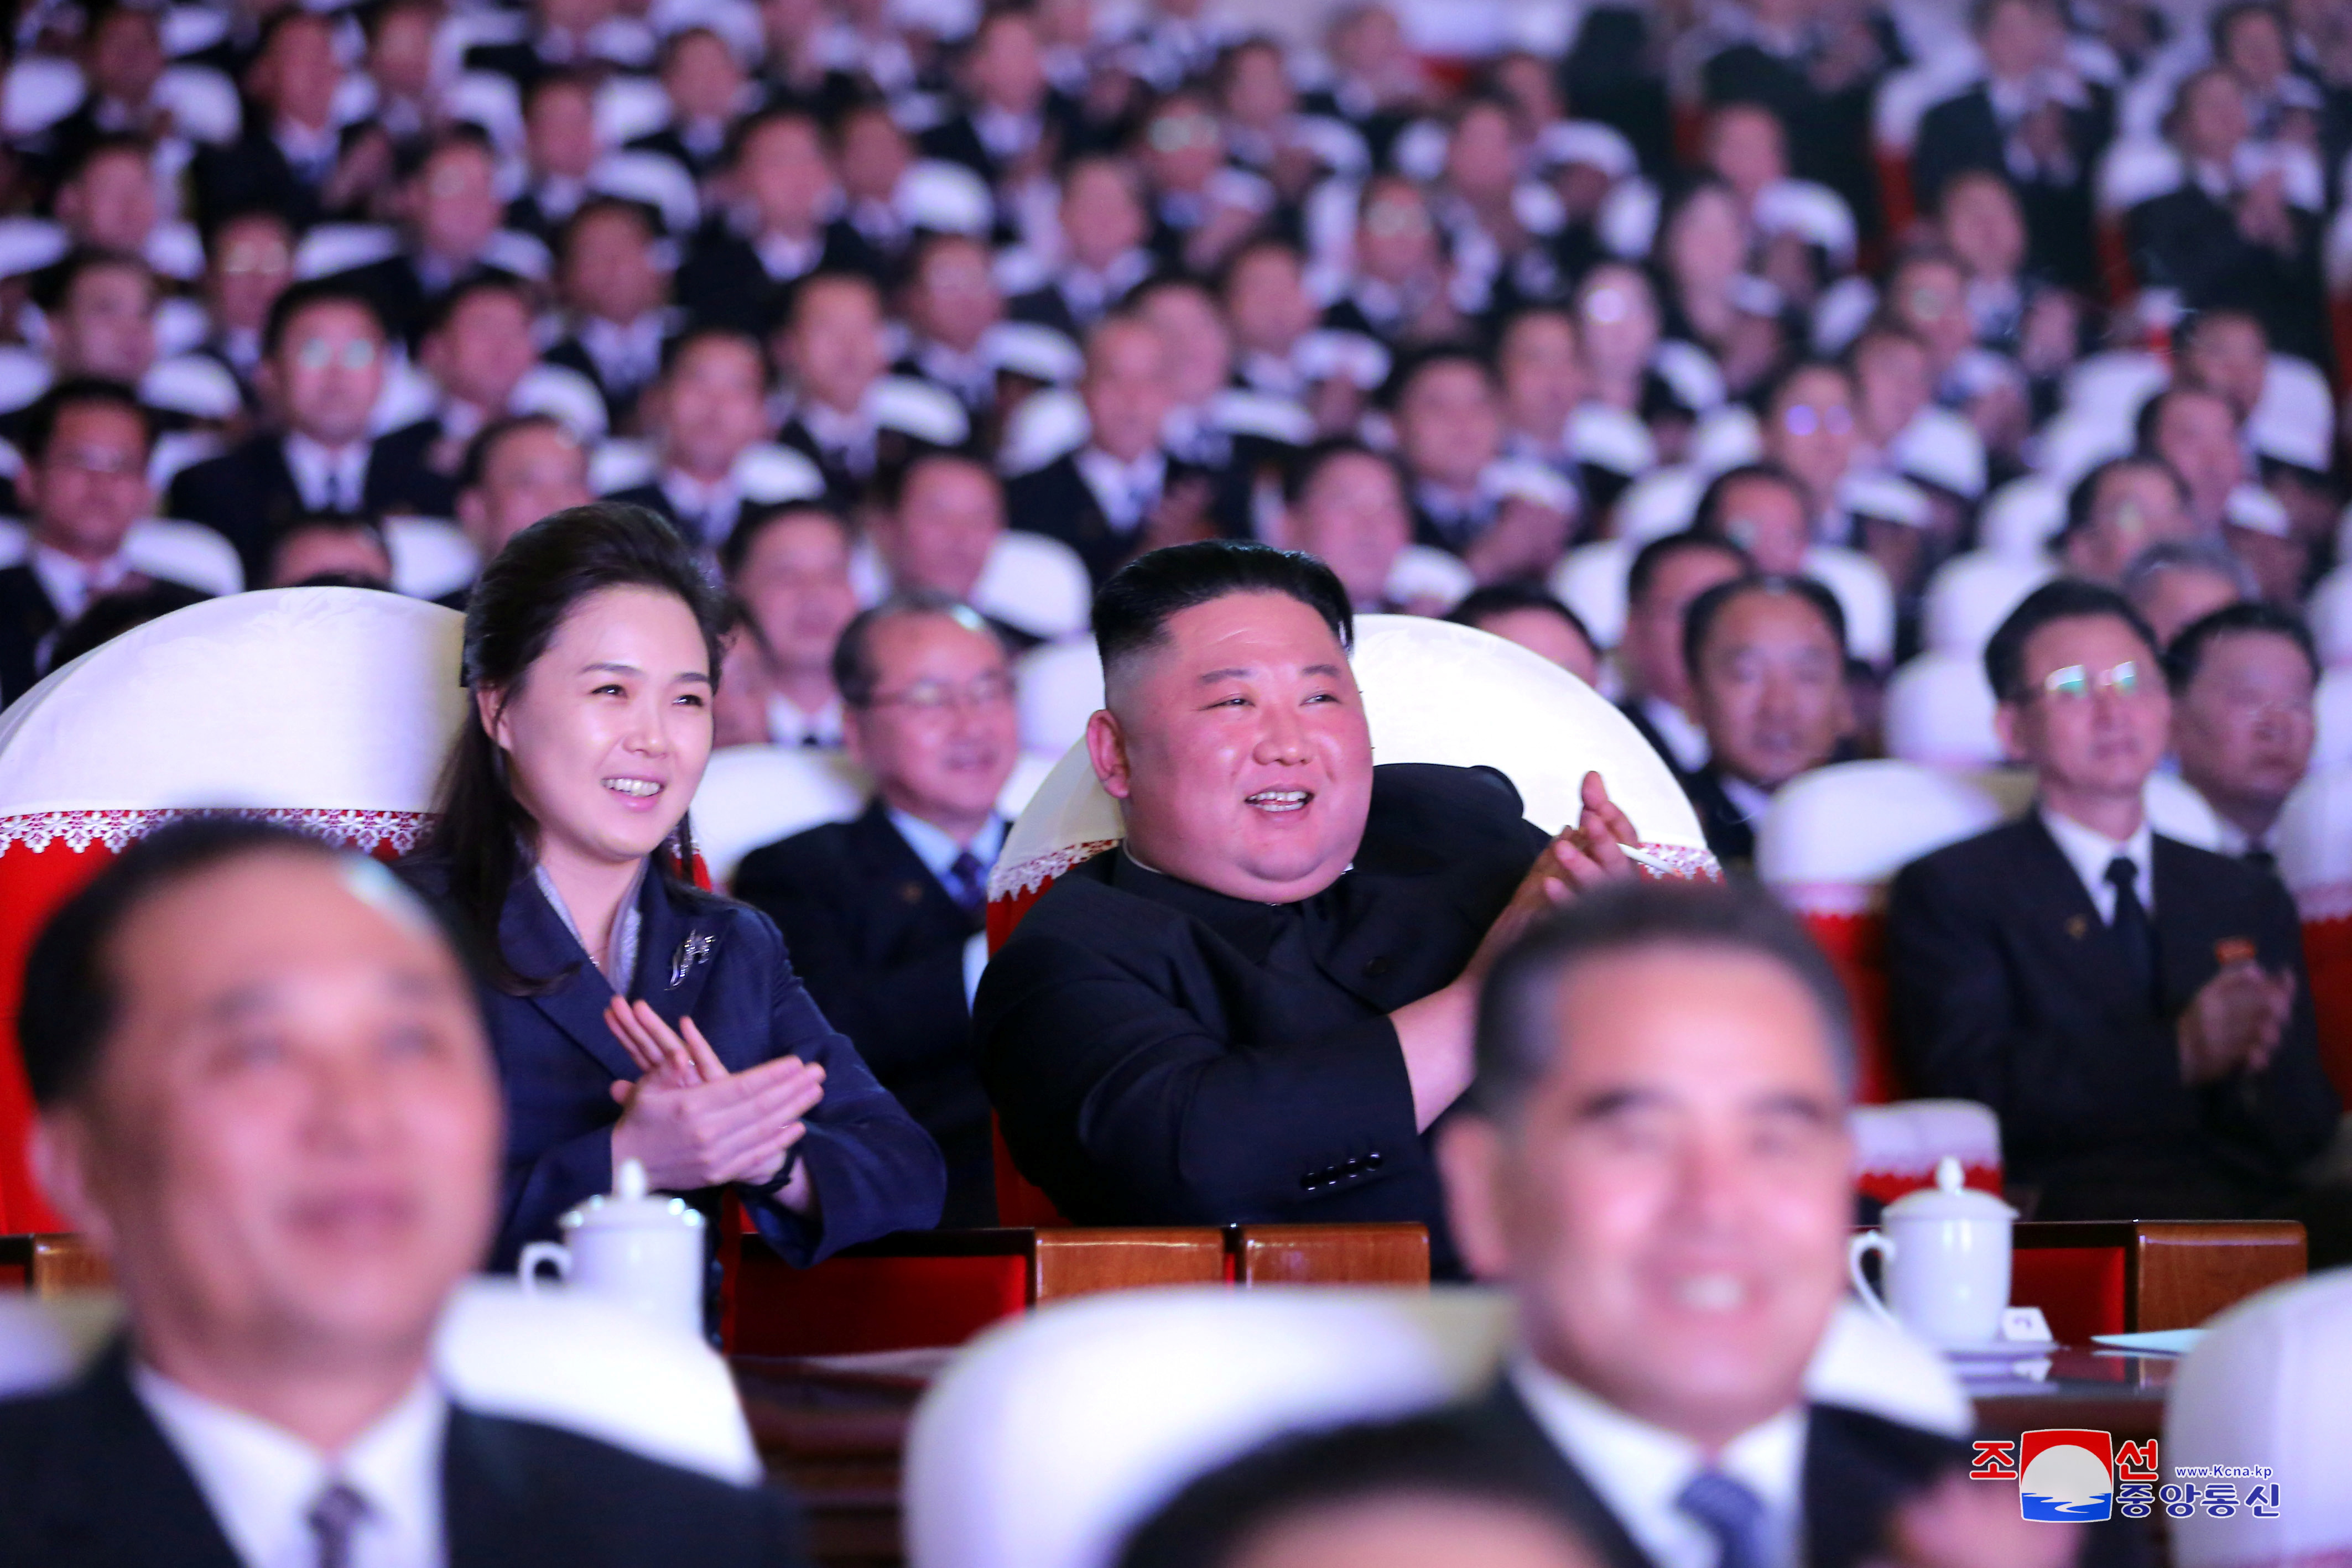 El lder norcoreano y su mujer asisten a un concierto en una imagen difundida por los medios locales.